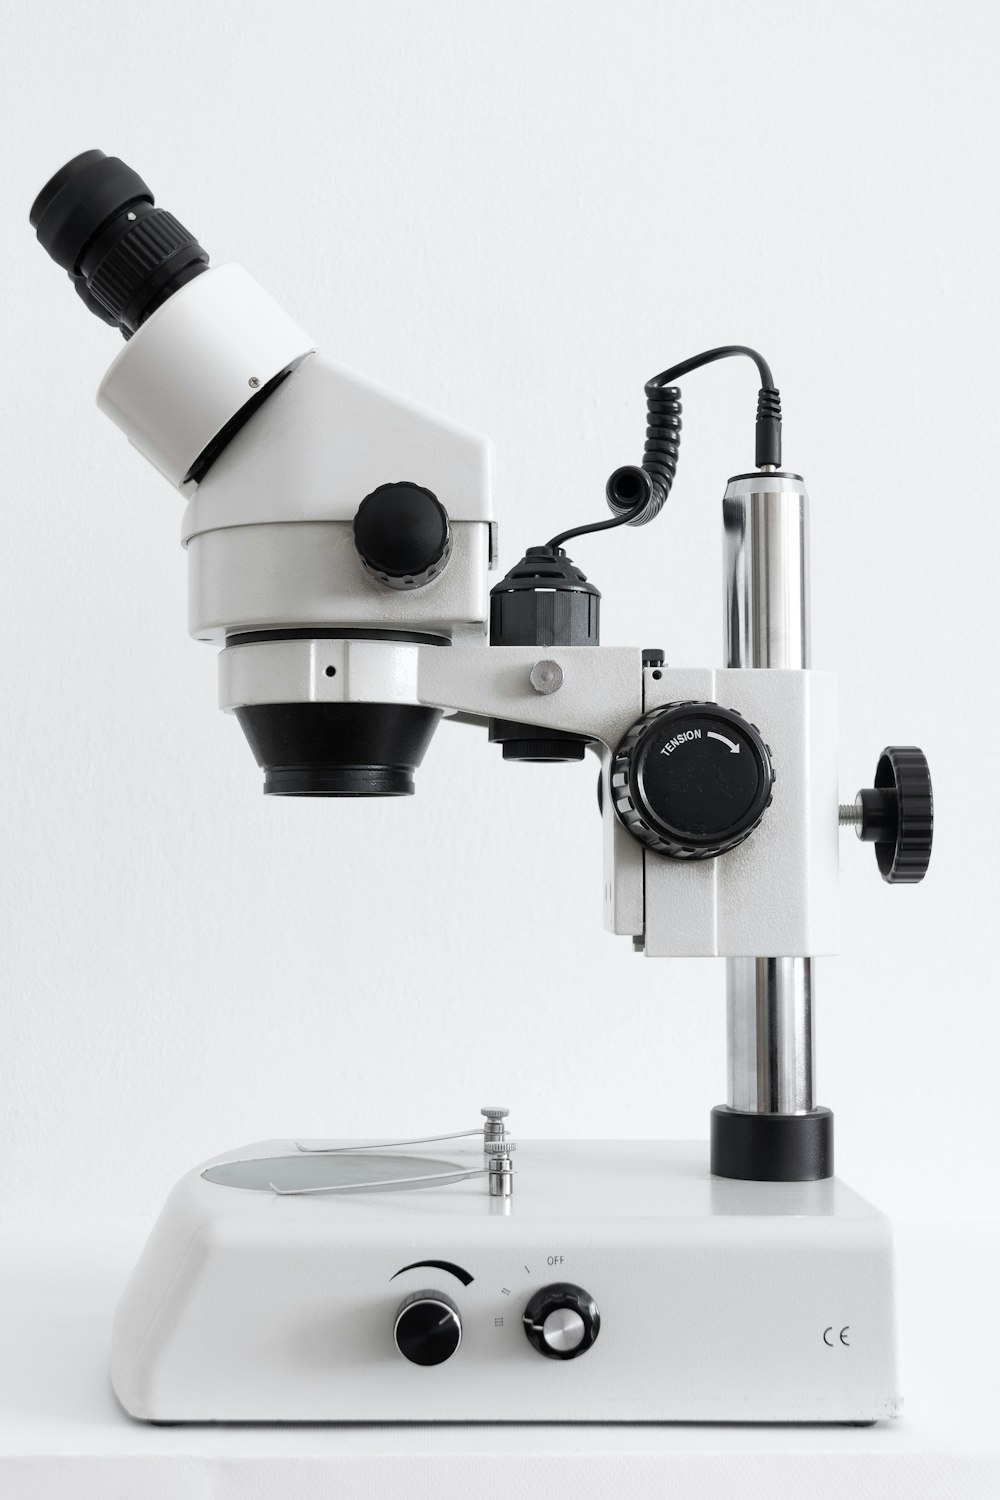 Microscópio branco e preto na superfície branca